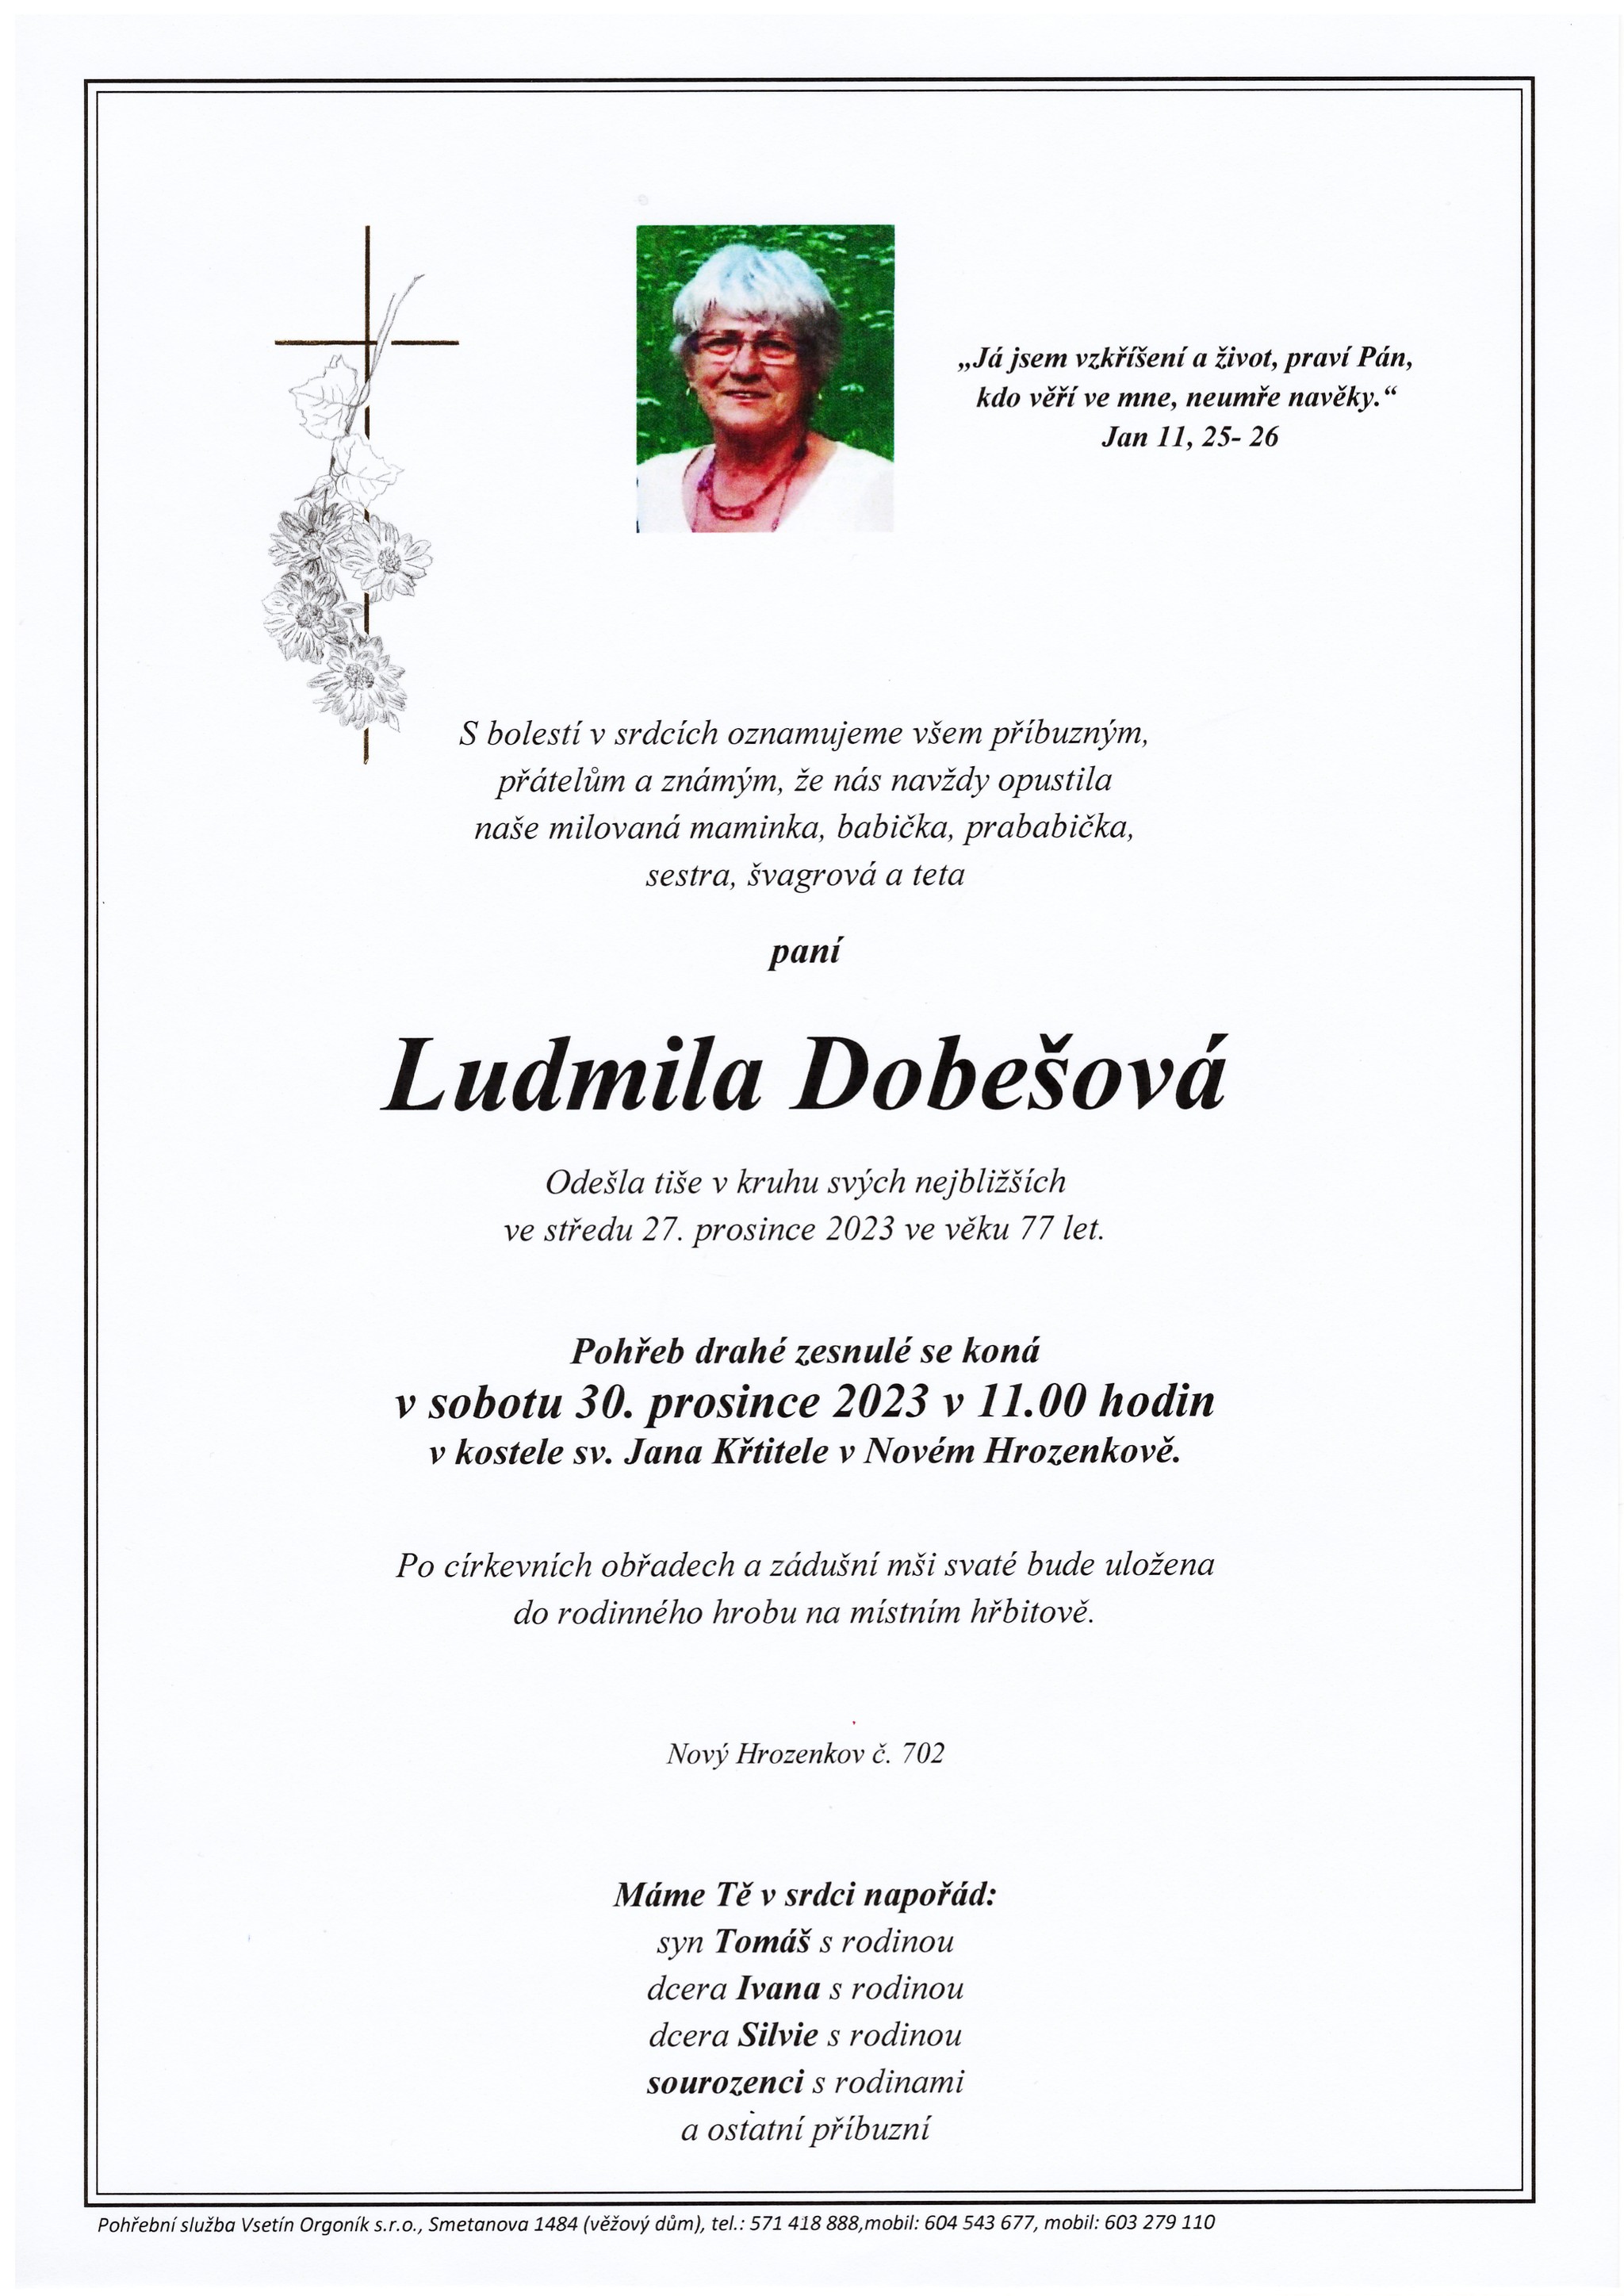 Ludmila Dobešová